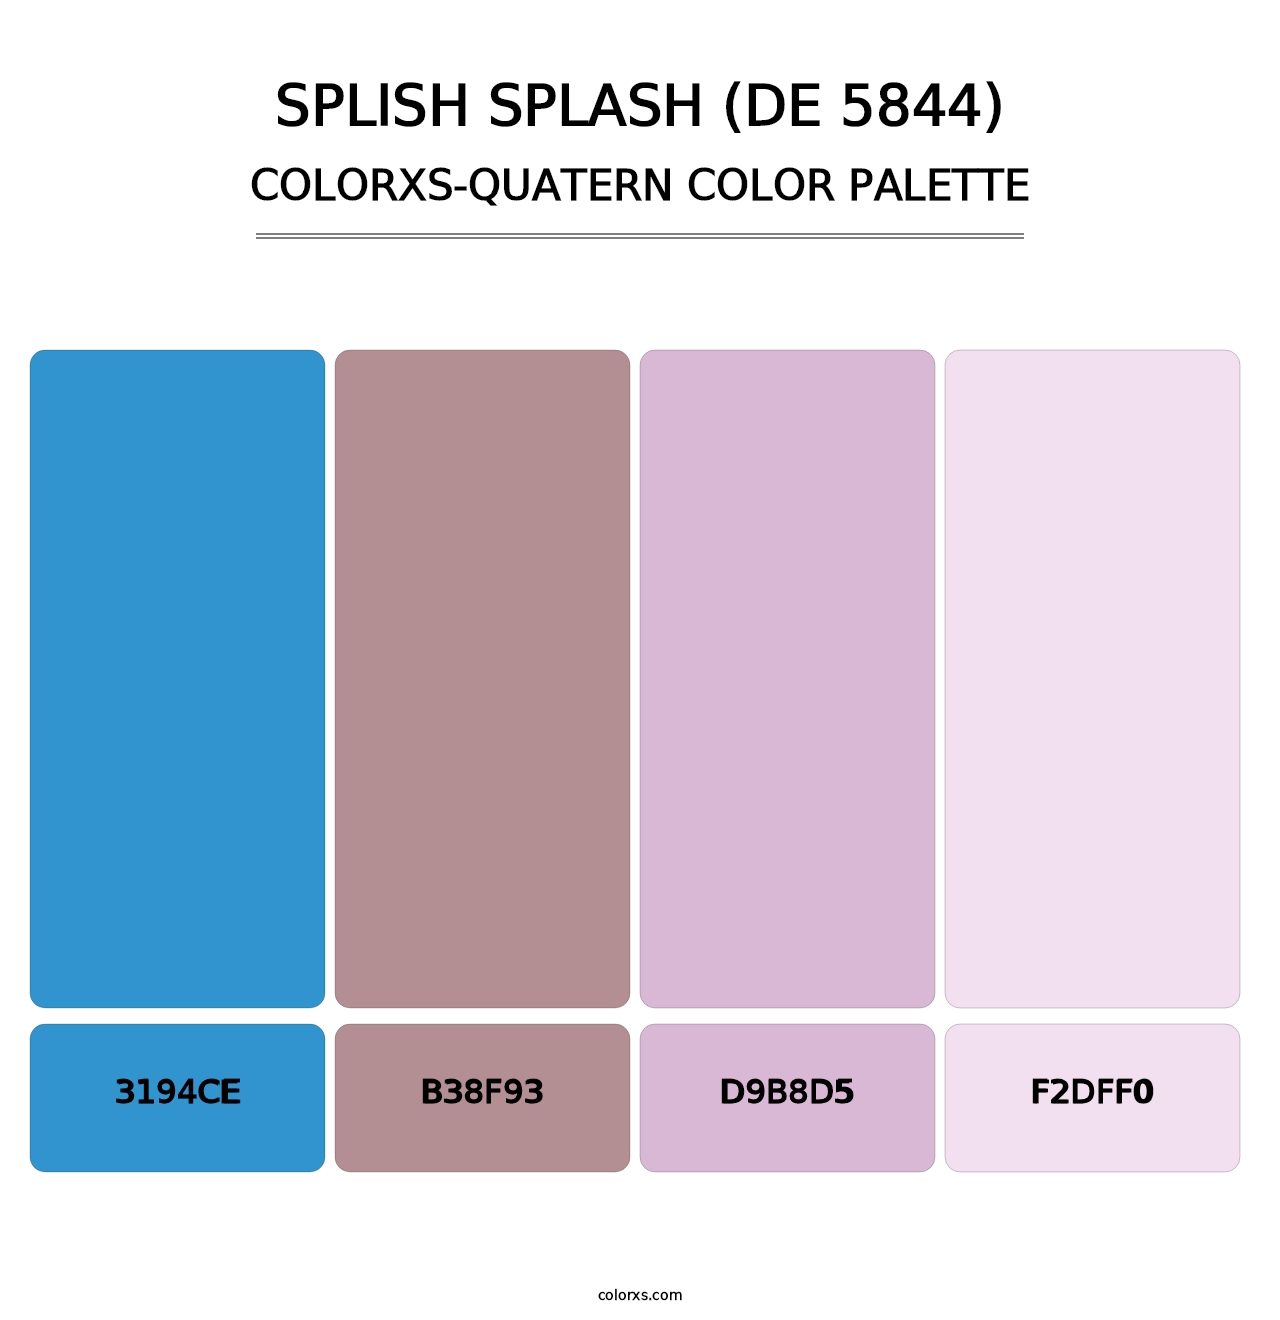 Splish Splash (DE 5844) - Colorxs Quatern Palette